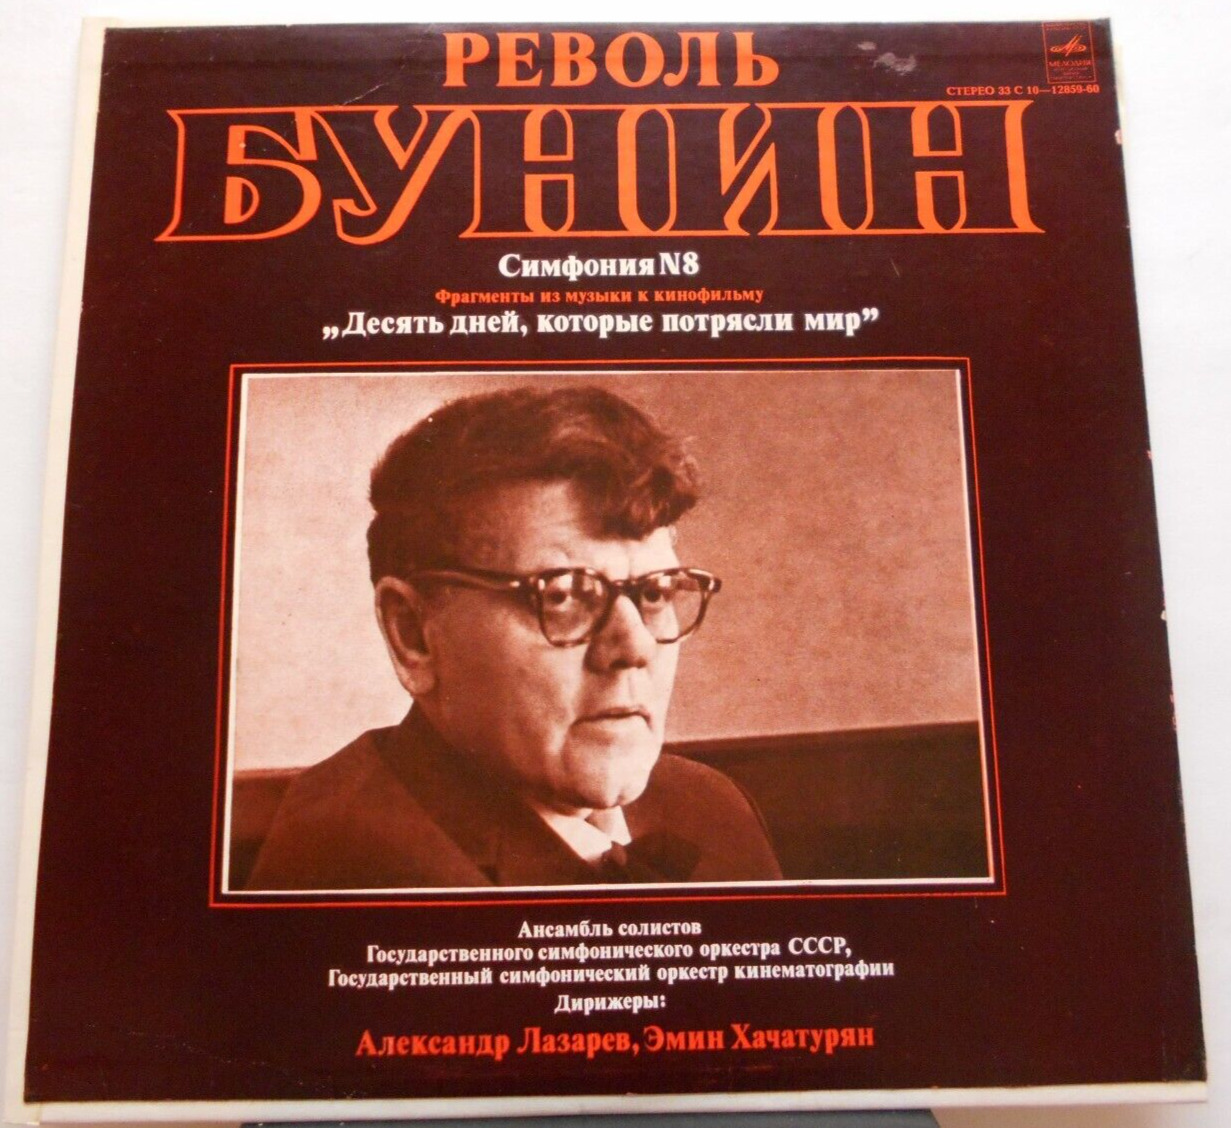 Bunin: Symphony No. 8 / Khatchaturian (Vinyl, Melodiya, C10-12860)